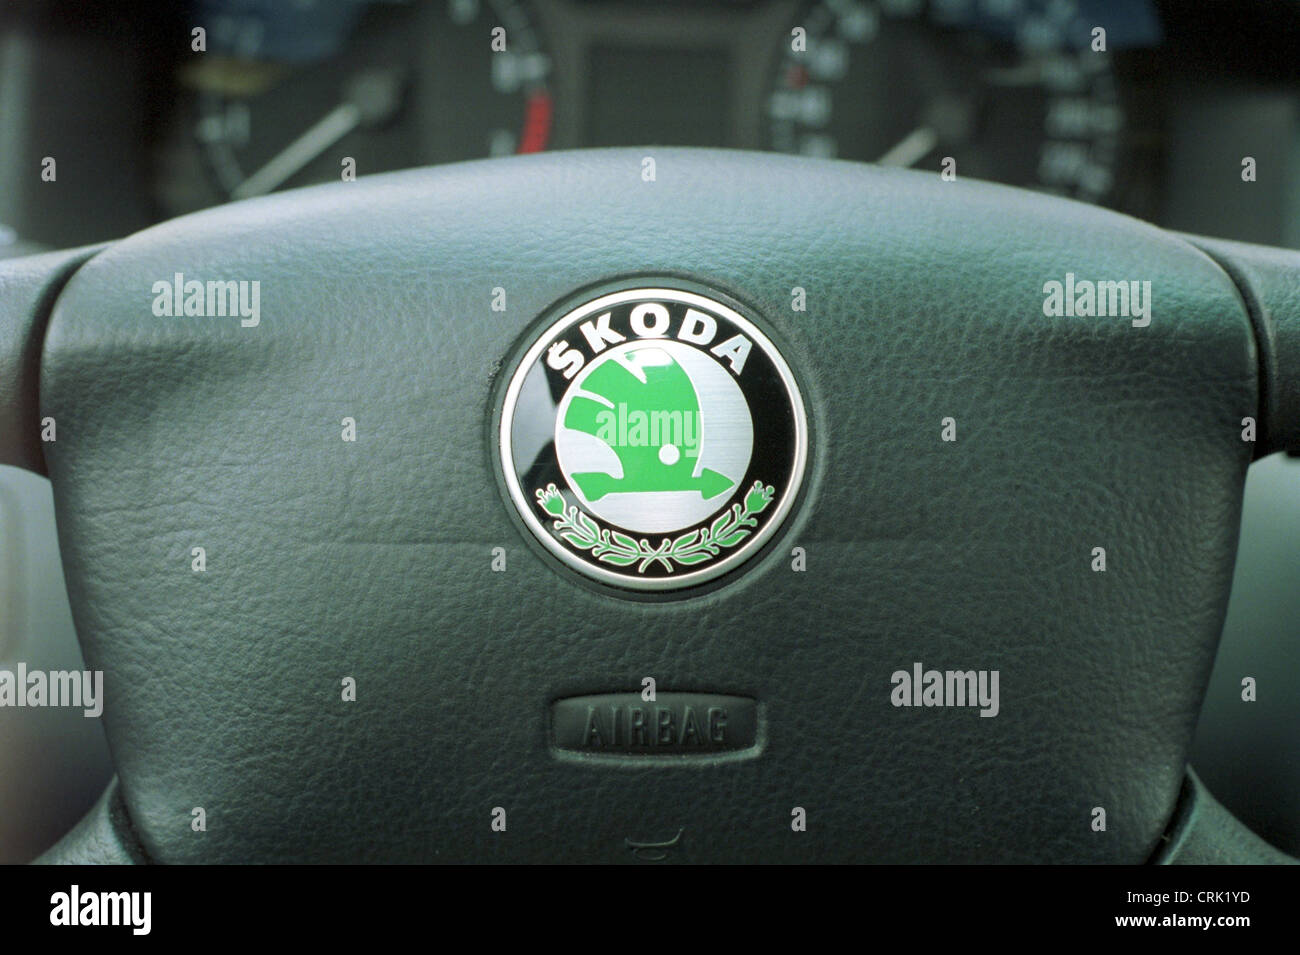 Auto Lenkrad mit dem Wappen der tschechische Autohersteller Skoda  Stockfotografie - Alamy